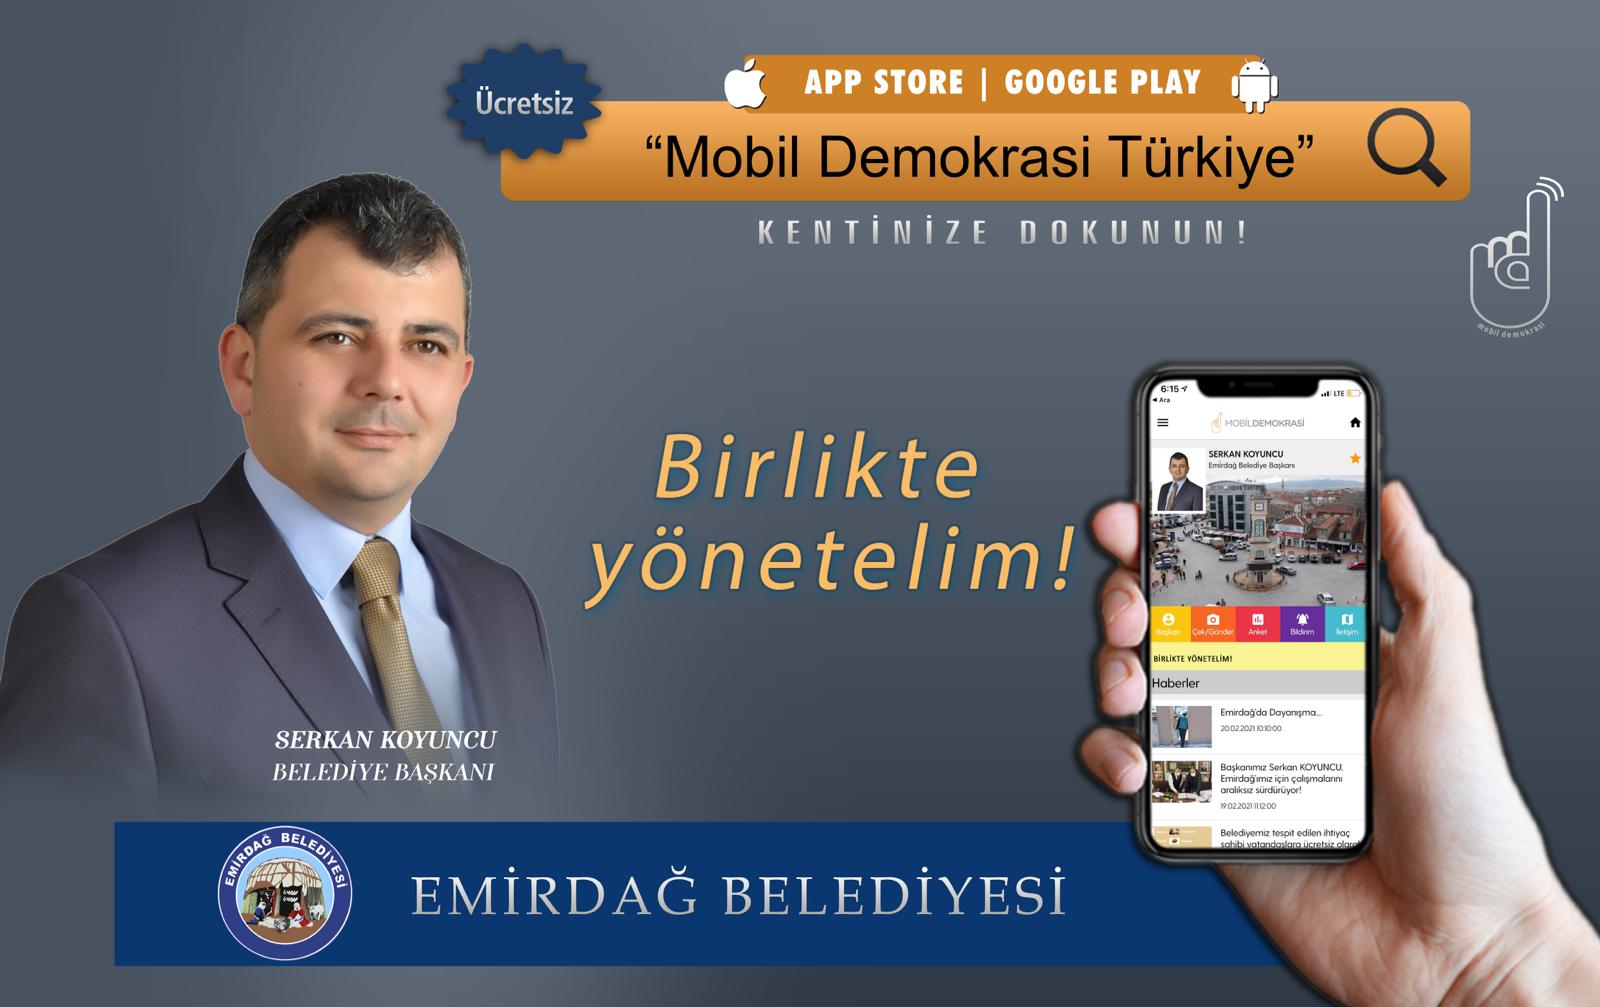 Emirdağ Belediyesi’nden ‘Mobil Demokrasi Türkiye’ uygulaması